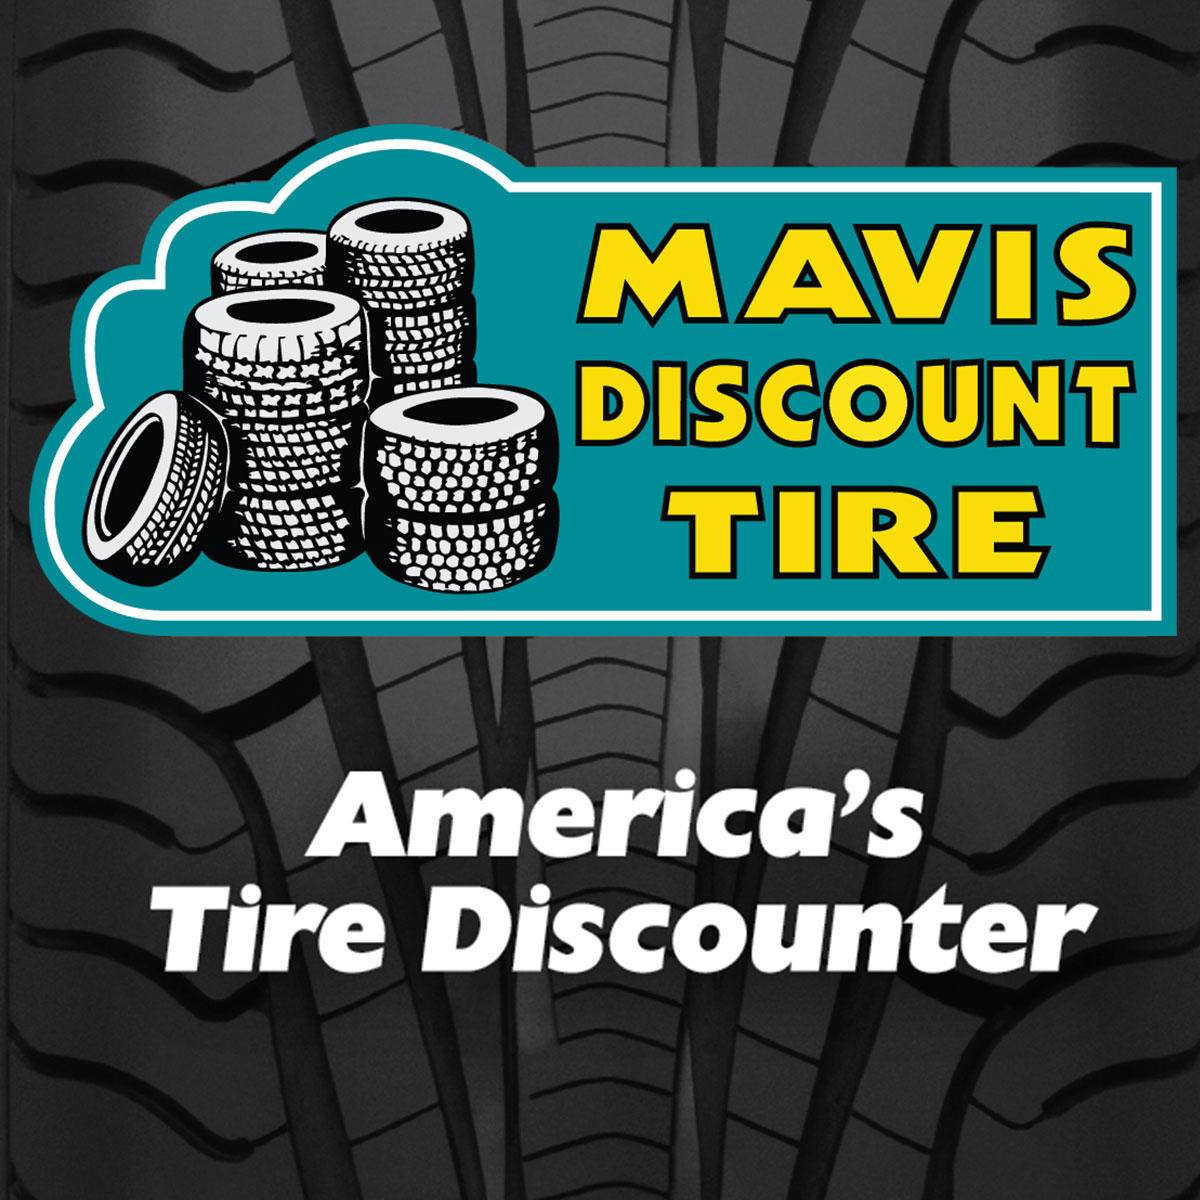 Mavis Discount Tire 201 S White Horse Pike, Magnolia New Jersey 08049